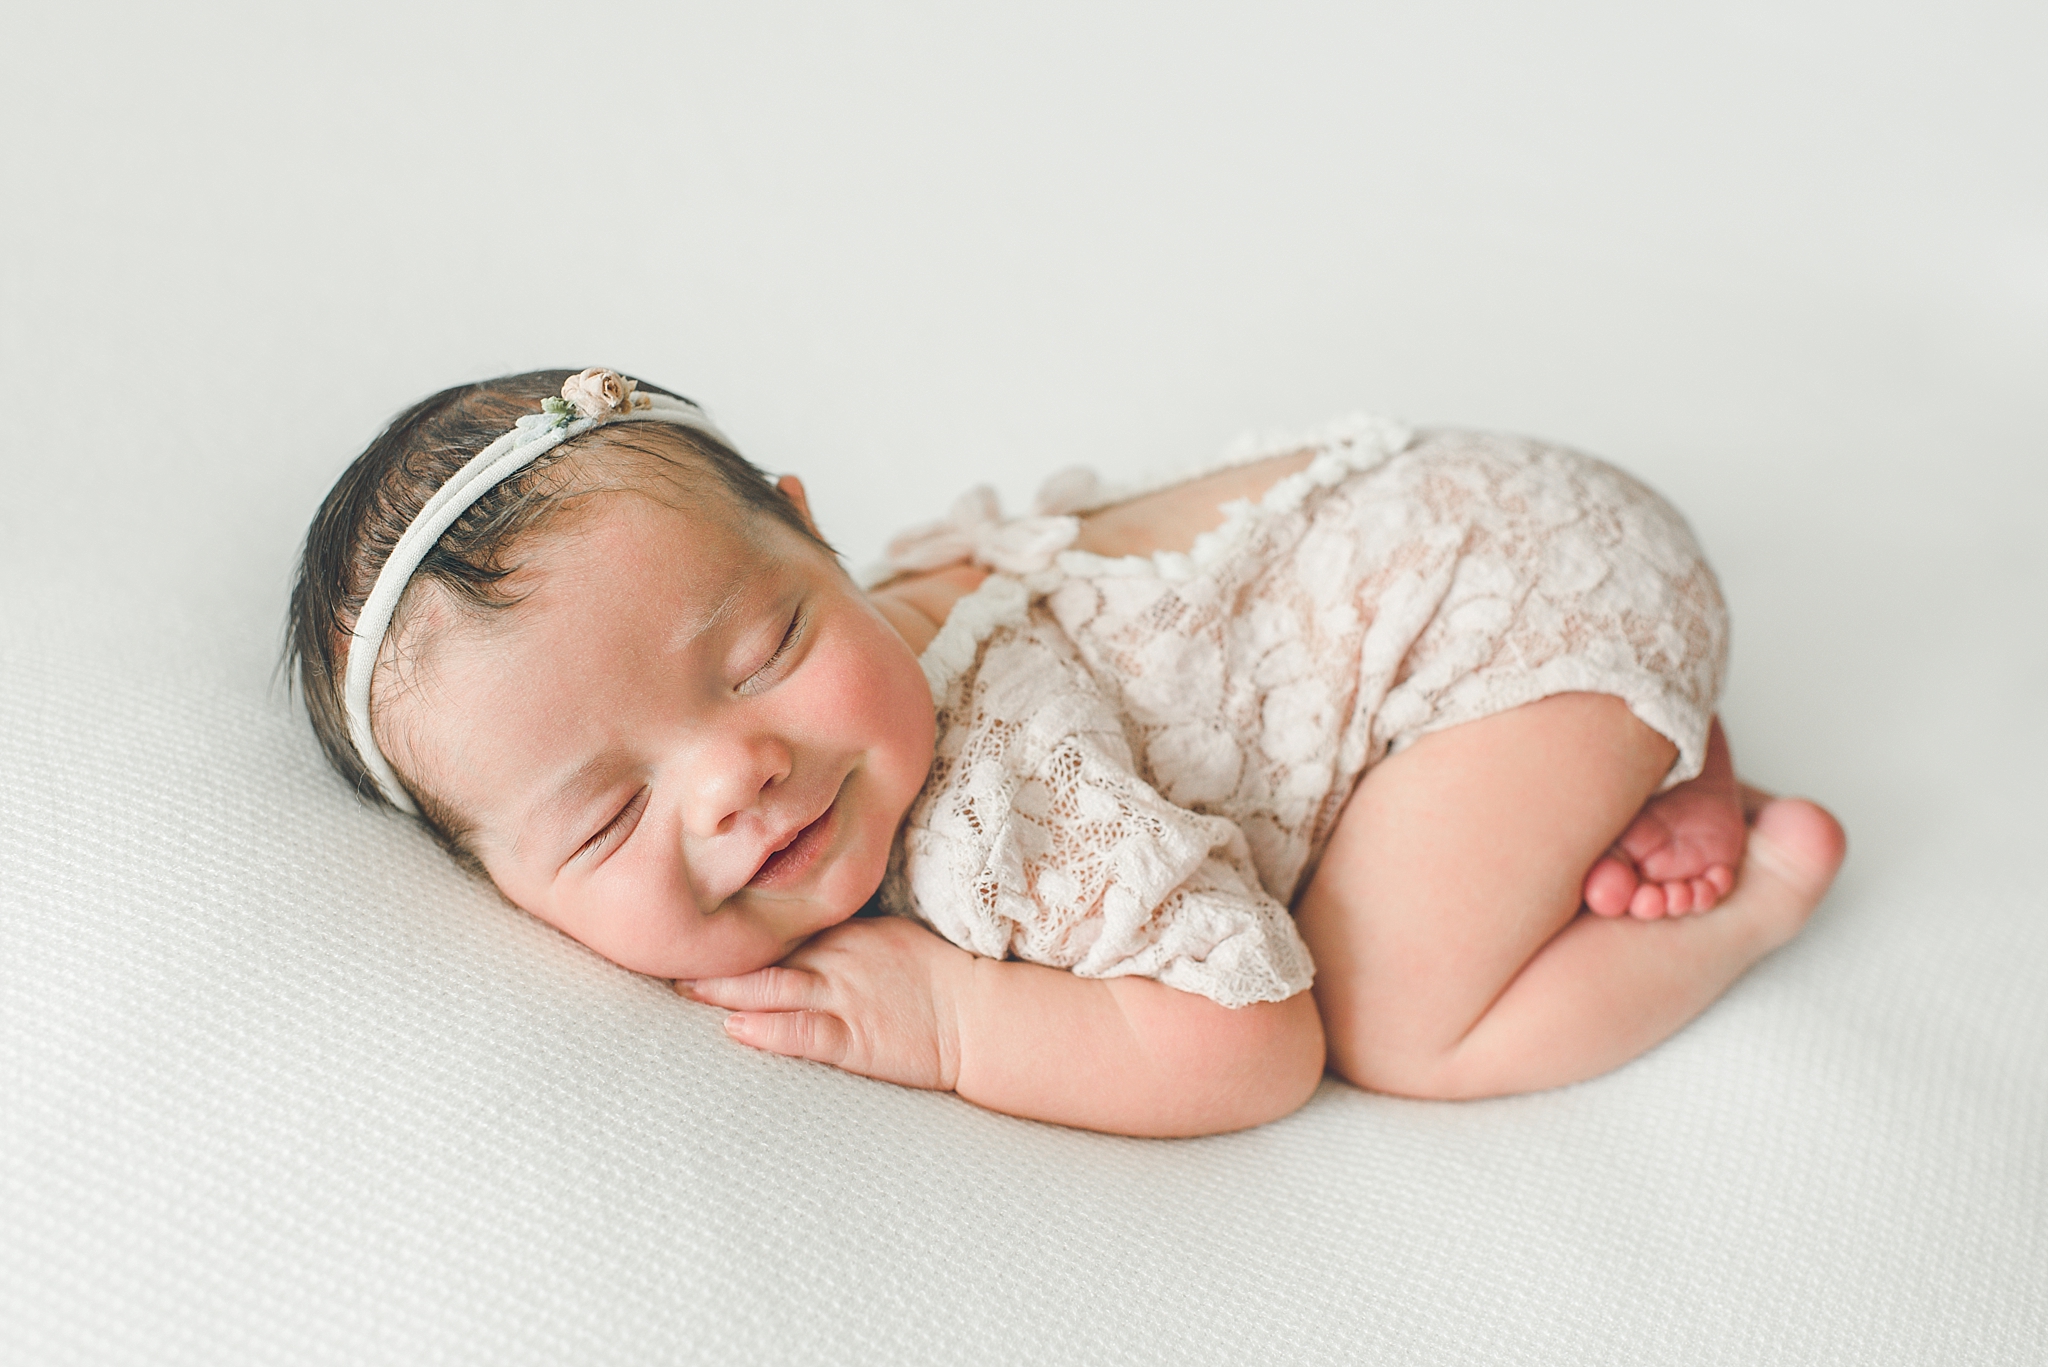 Kettering Ohio Newborn Photographer | Baby Cora